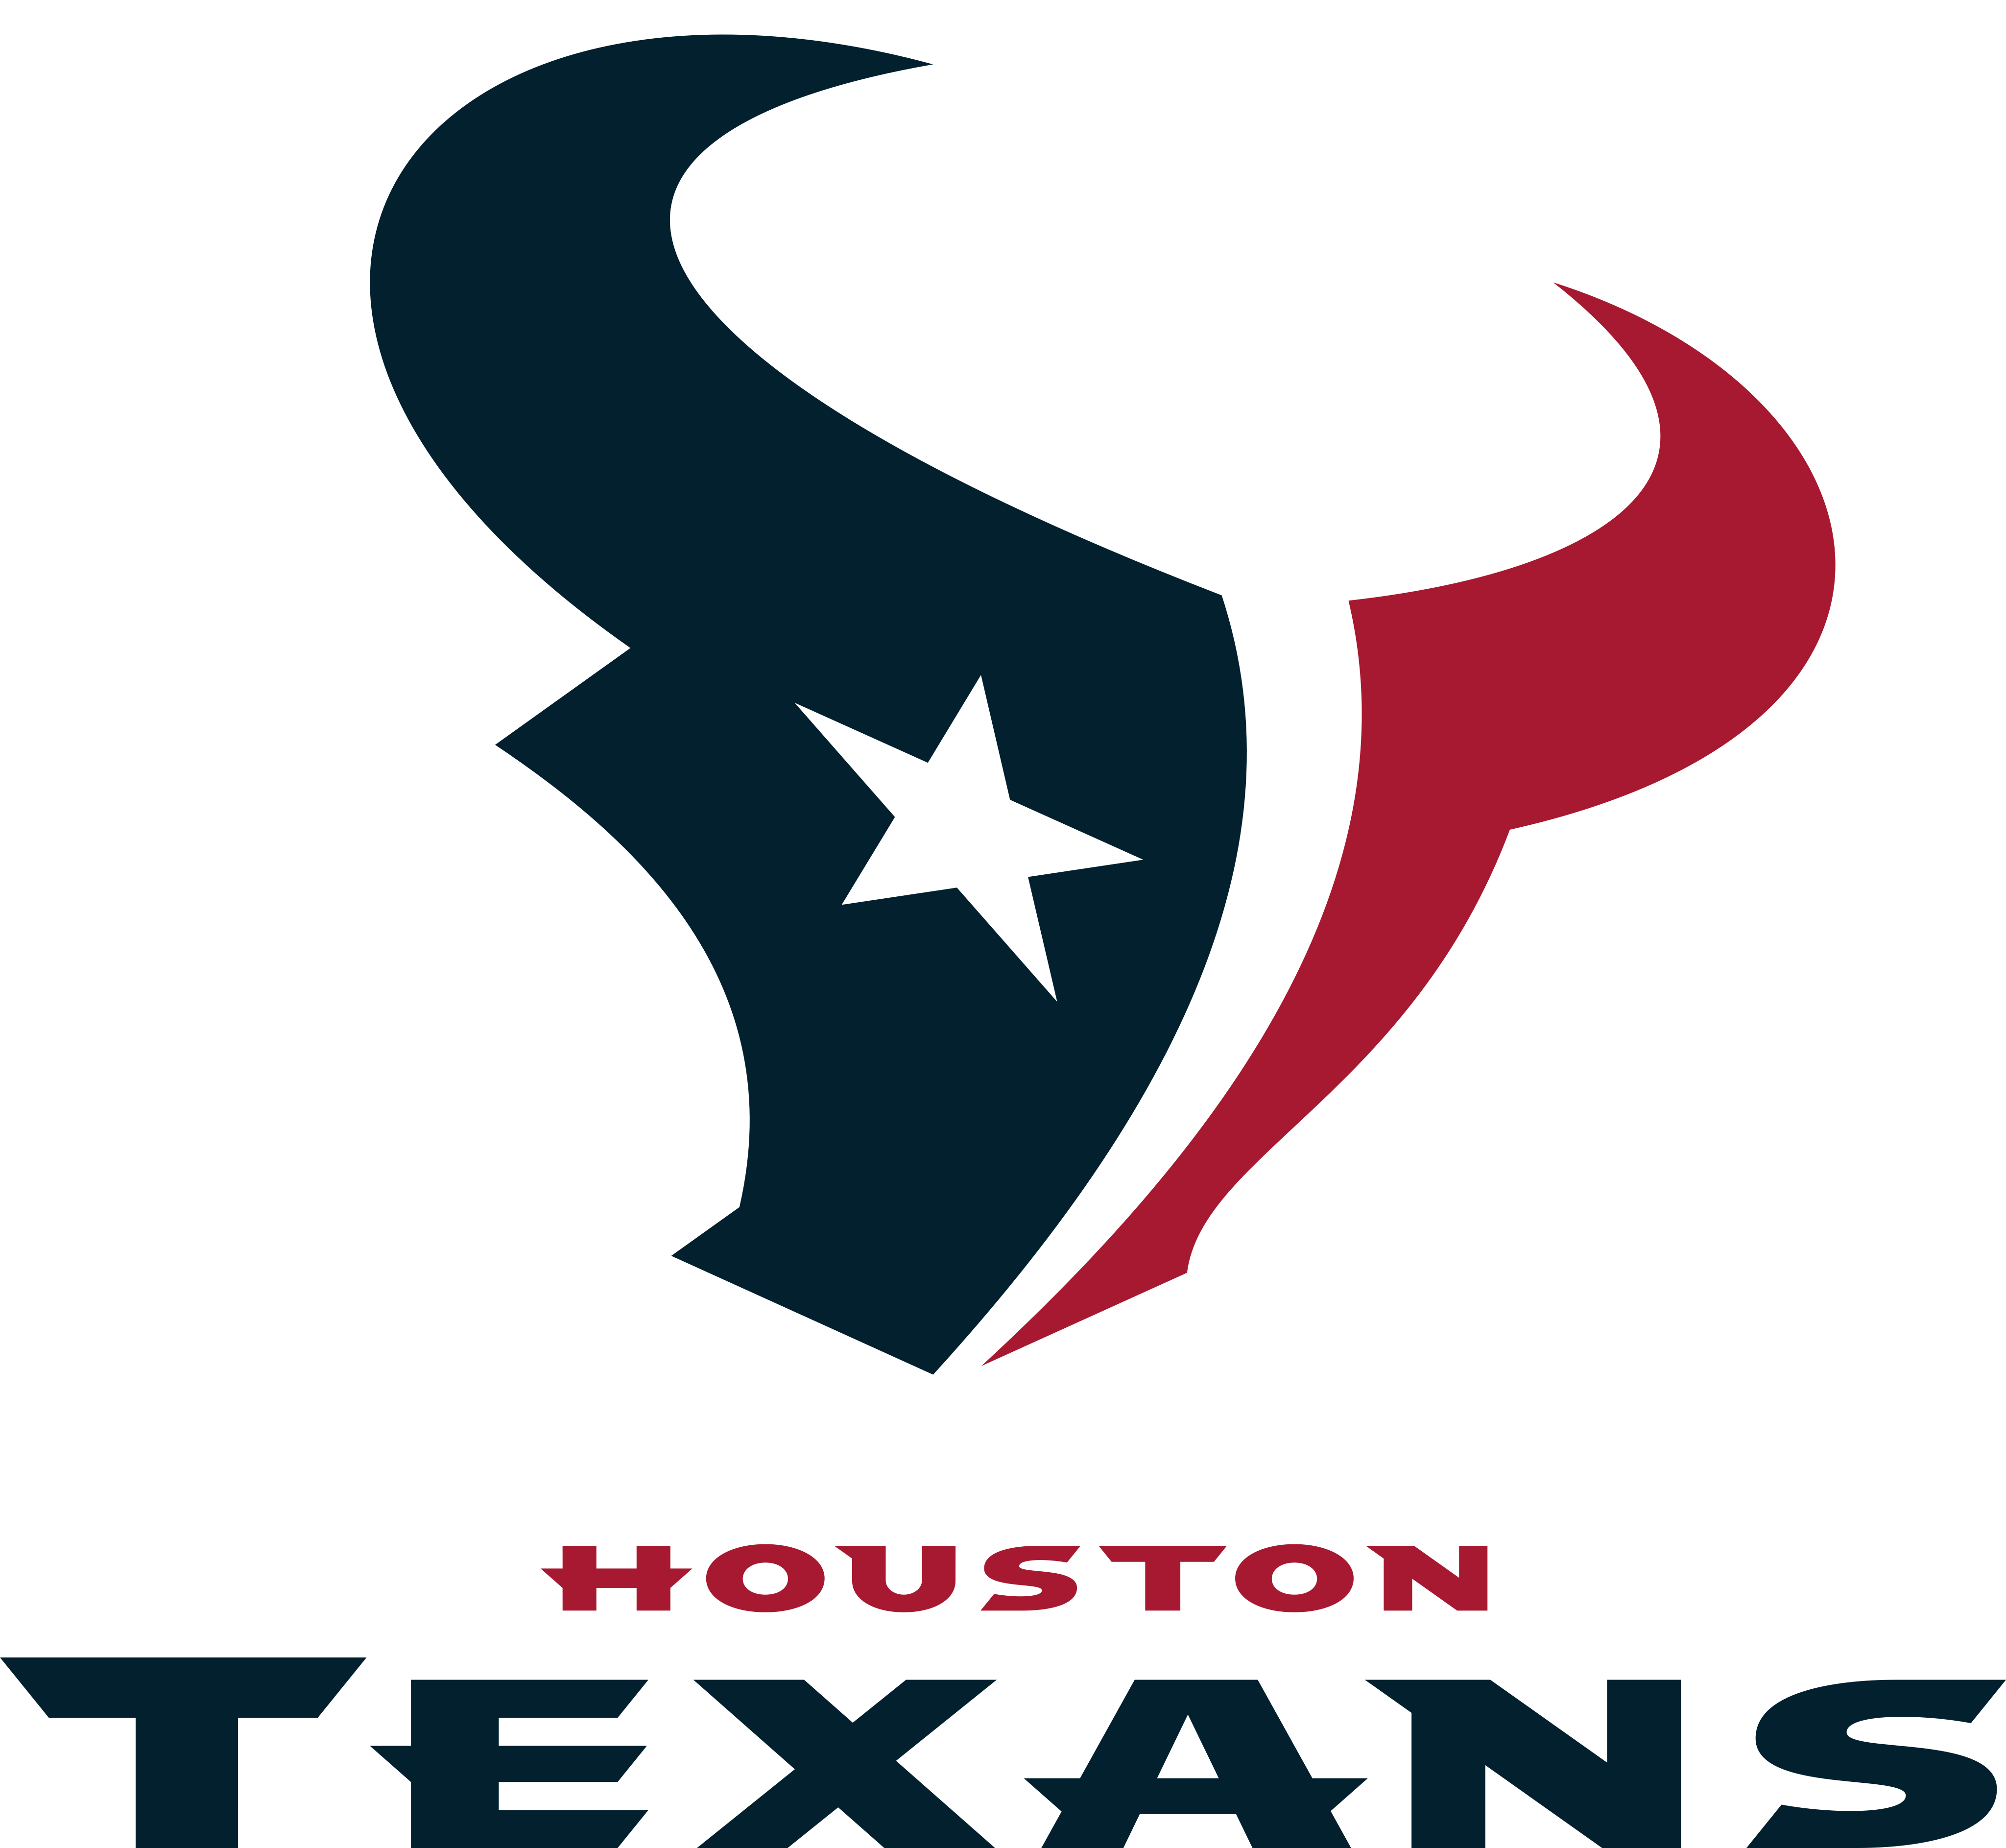 houston texans logo - Houston Texans Logo